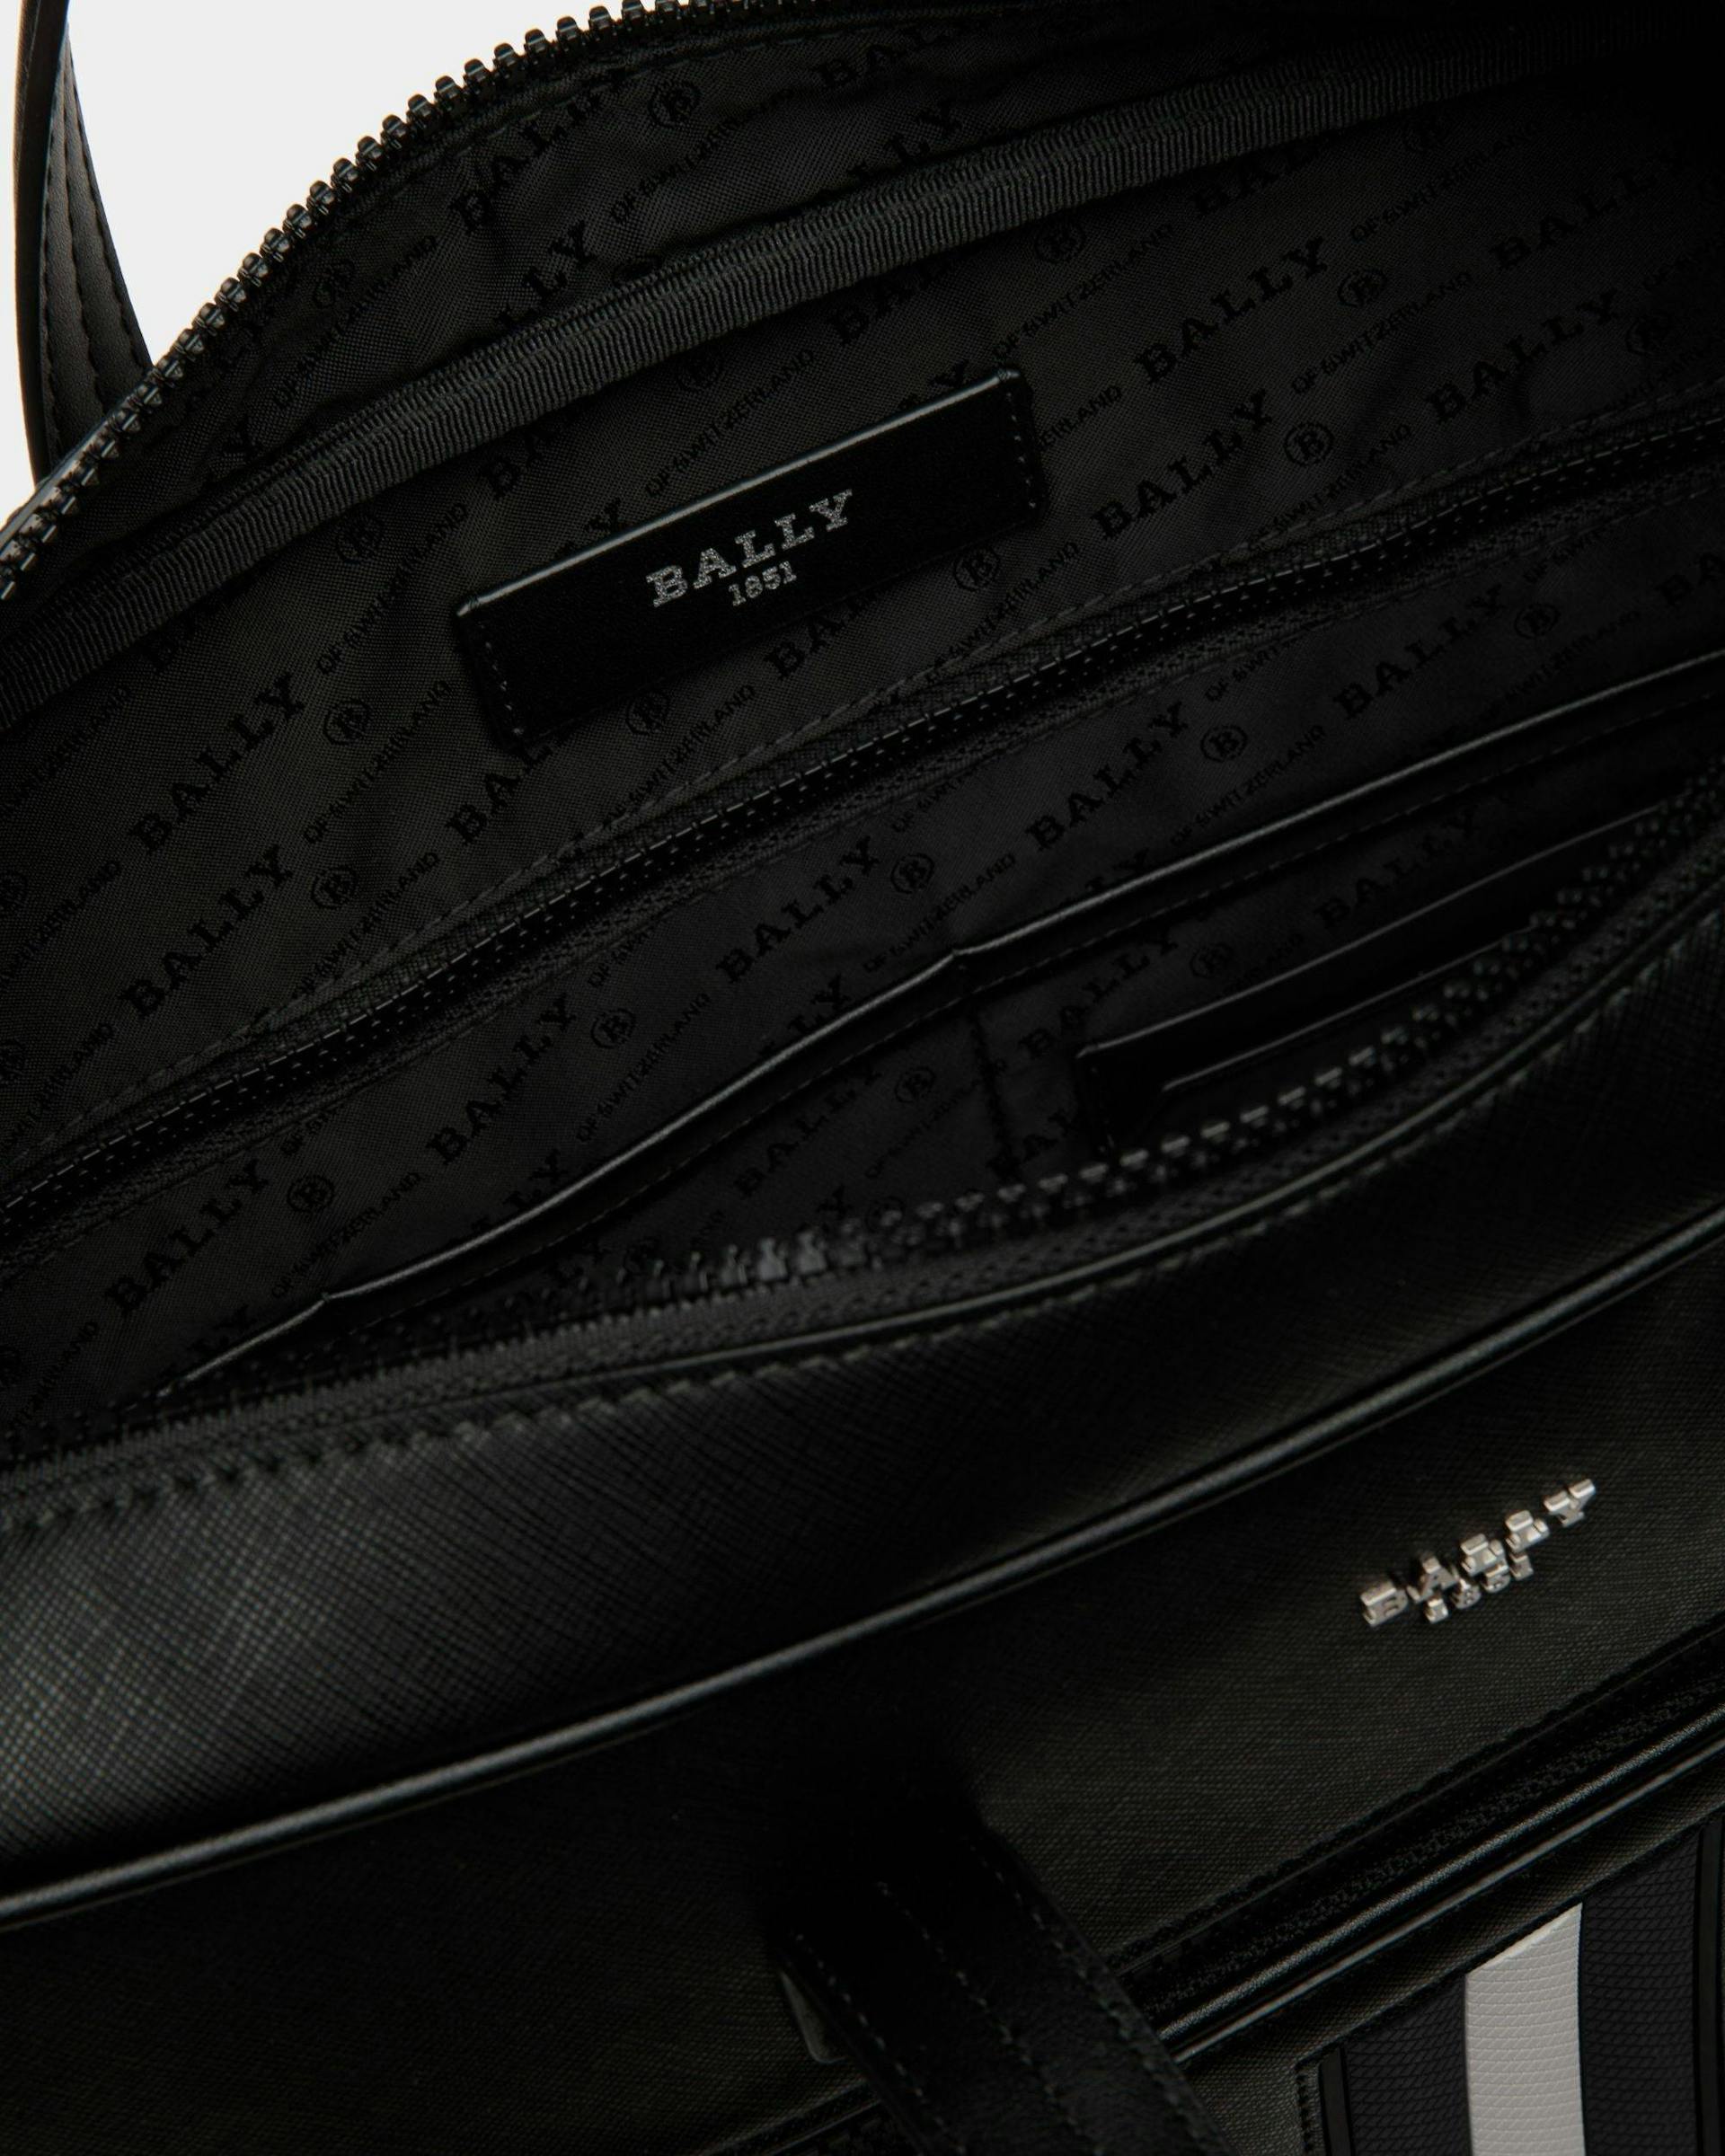 Men's Mythos Business Bag In Black Leather | Bally | Still Life Open / Inside